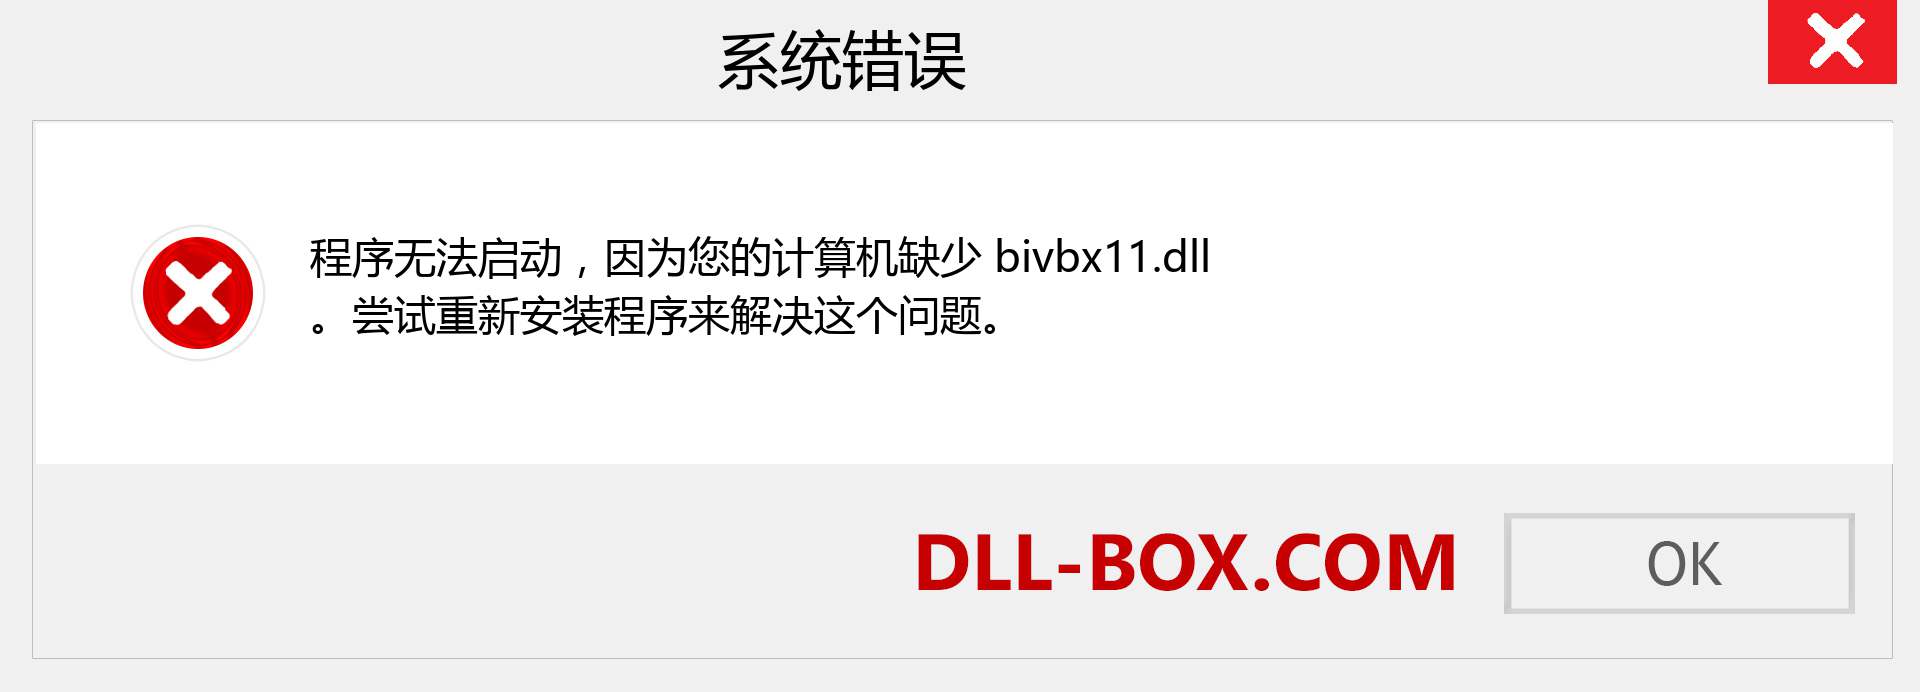 bivbx11.dll 文件丢失？。 适用于 Windows 7、8、10 的下载 - 修复 Windows、照片、图像上的 bivbx11 dll 丢失错误